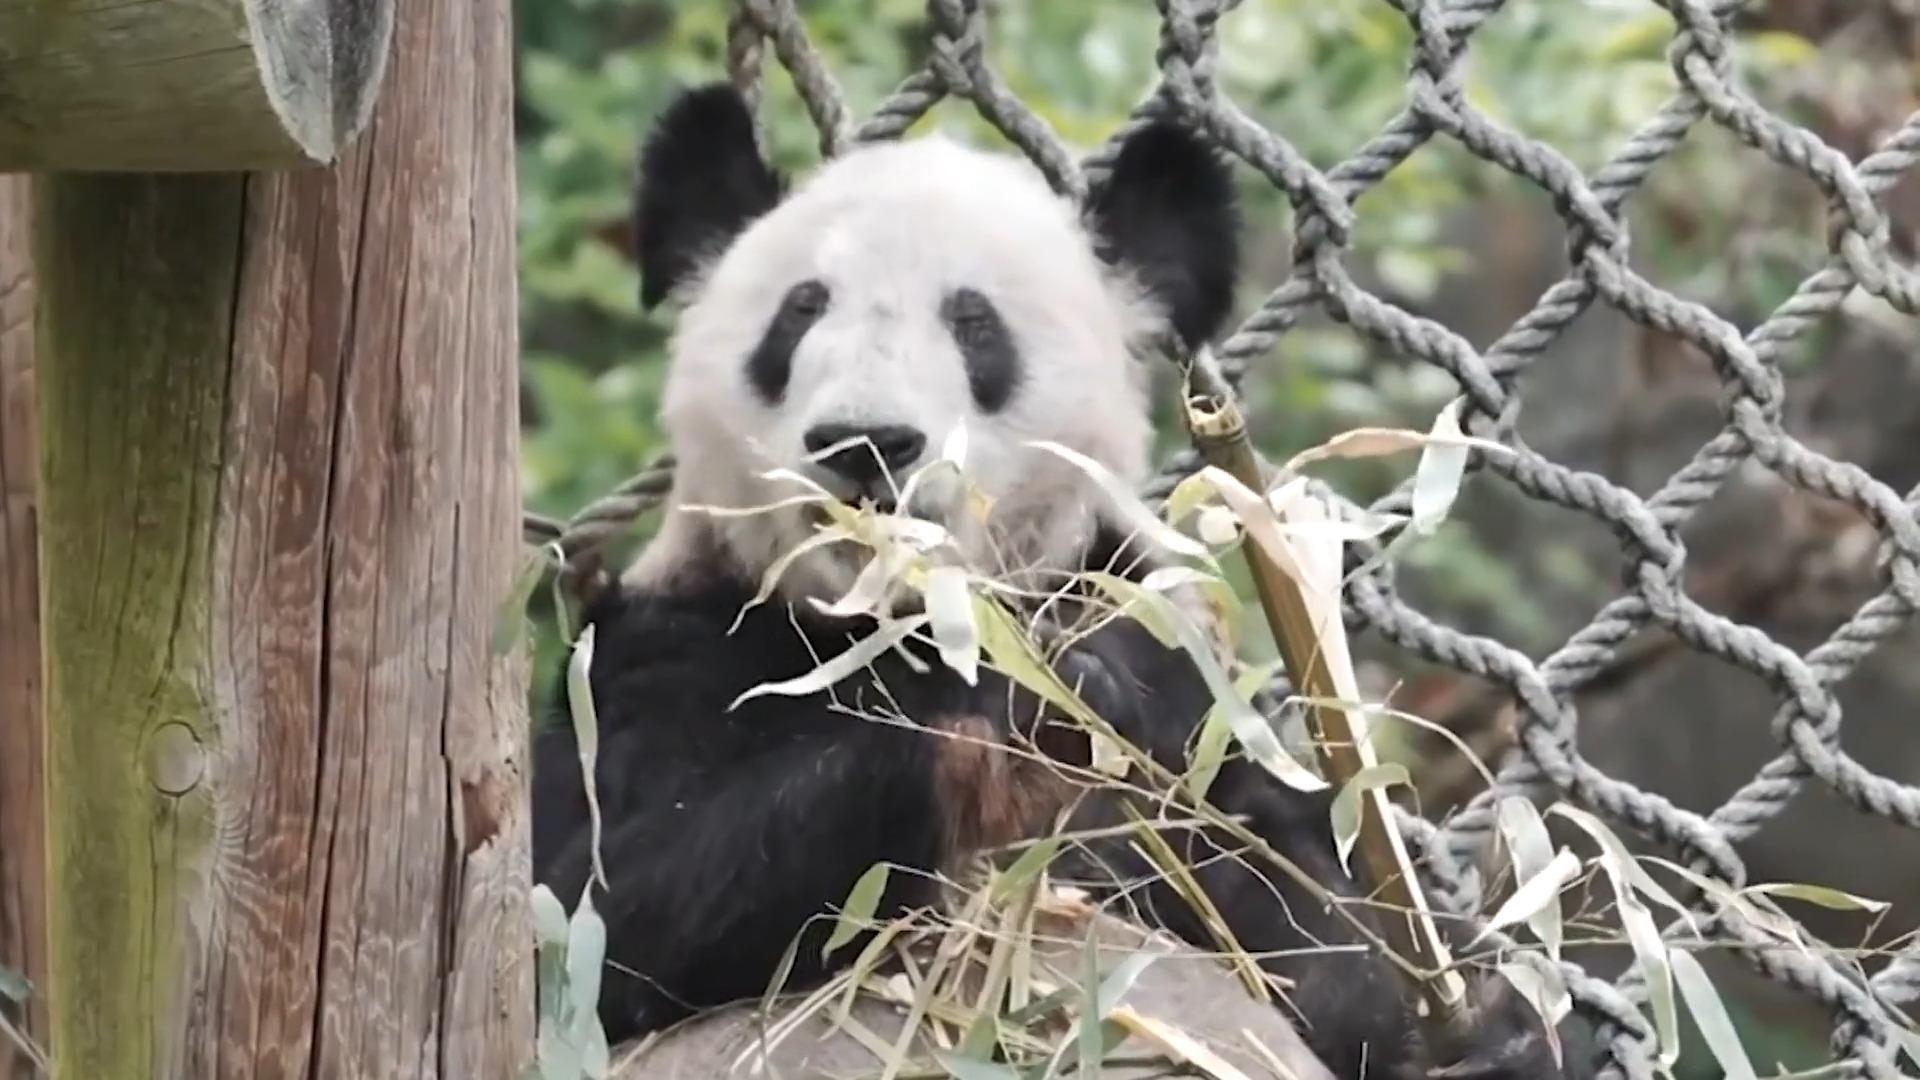 Nach 22 Jahren: Pandadame Ya Ya darf zurück nach China Kurz nachdem ihr Partner verstorben ist